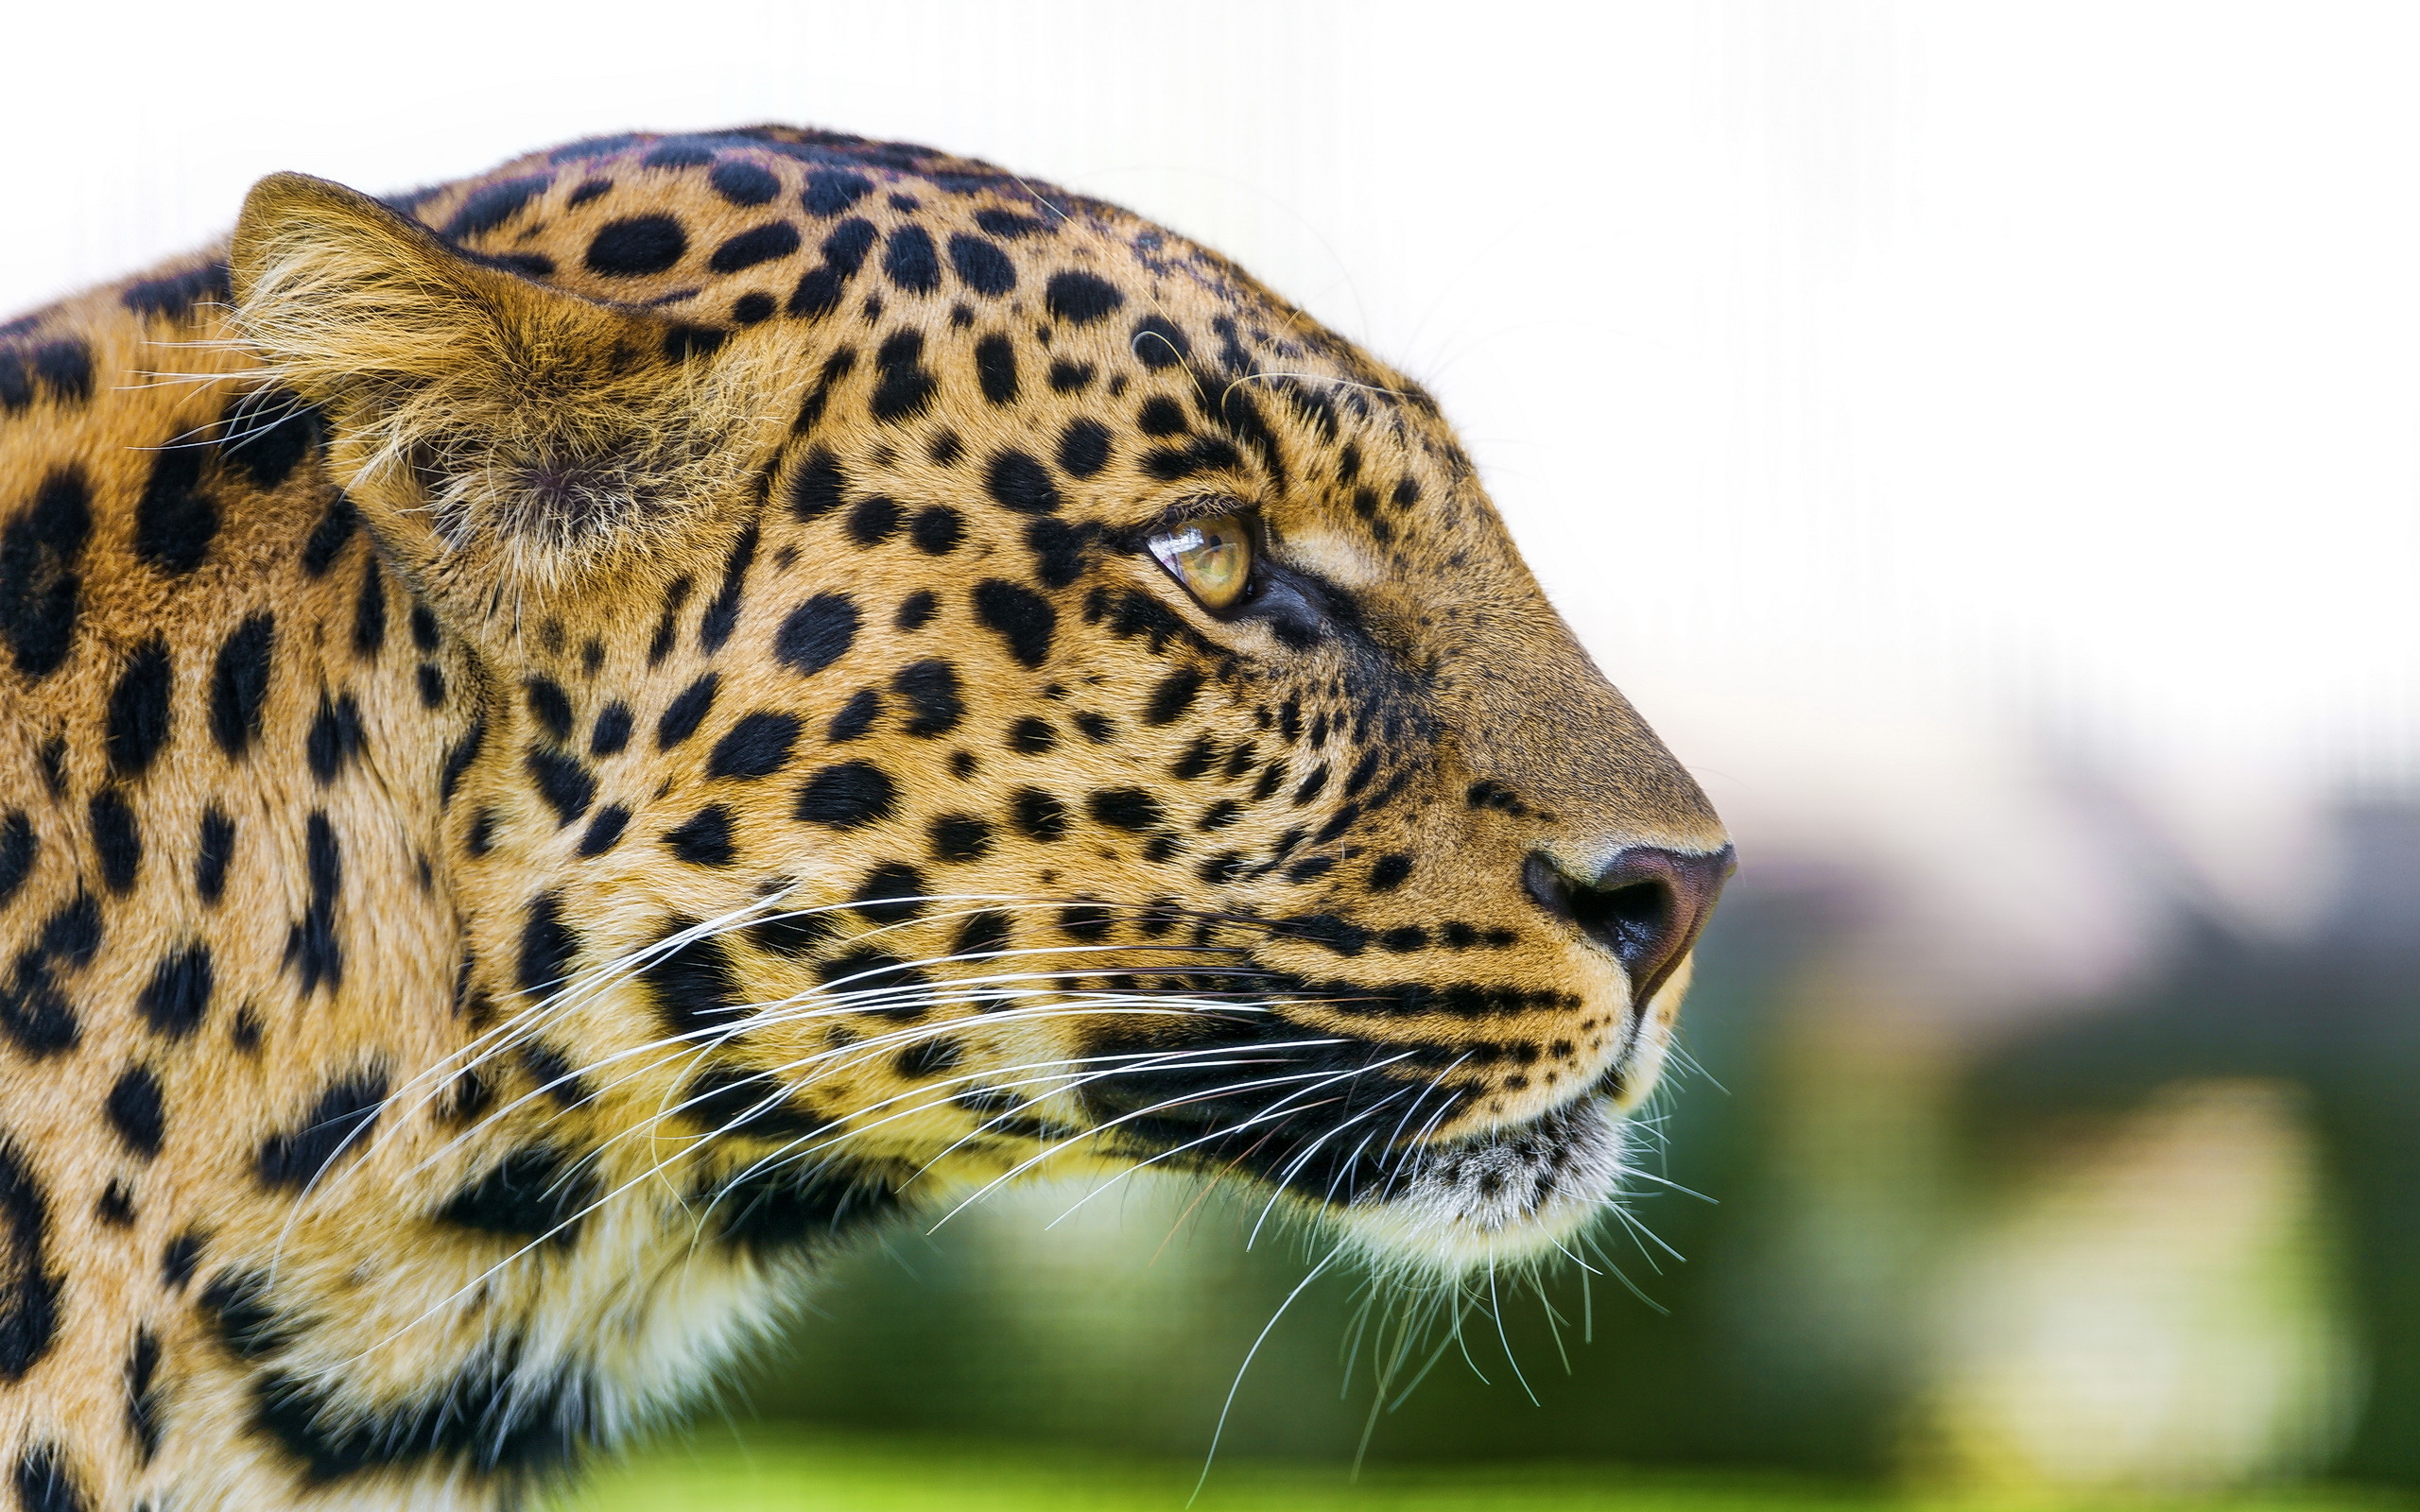 Big Cat Leopard1579918977 - Big Cat Leopard - Leopard, Cat, Big